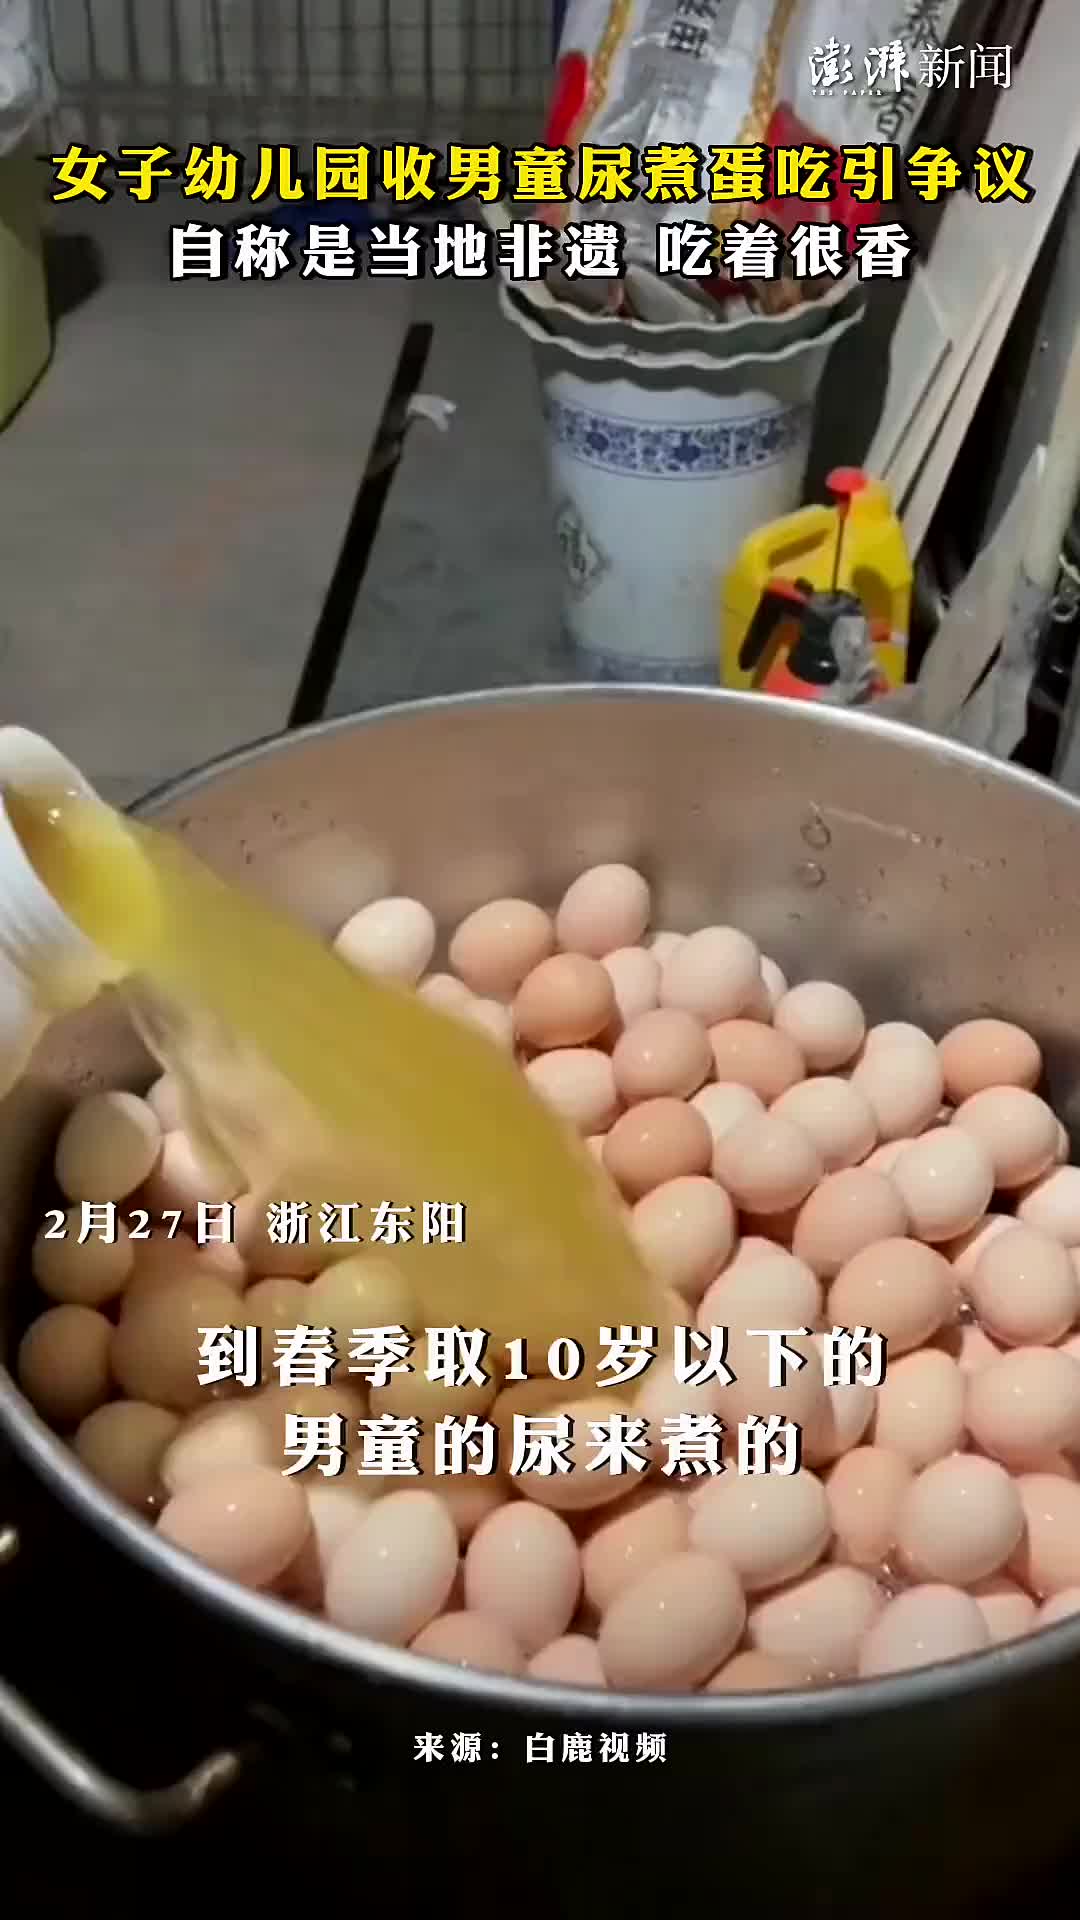 东阳特产童子尿煮鸡蛋图片